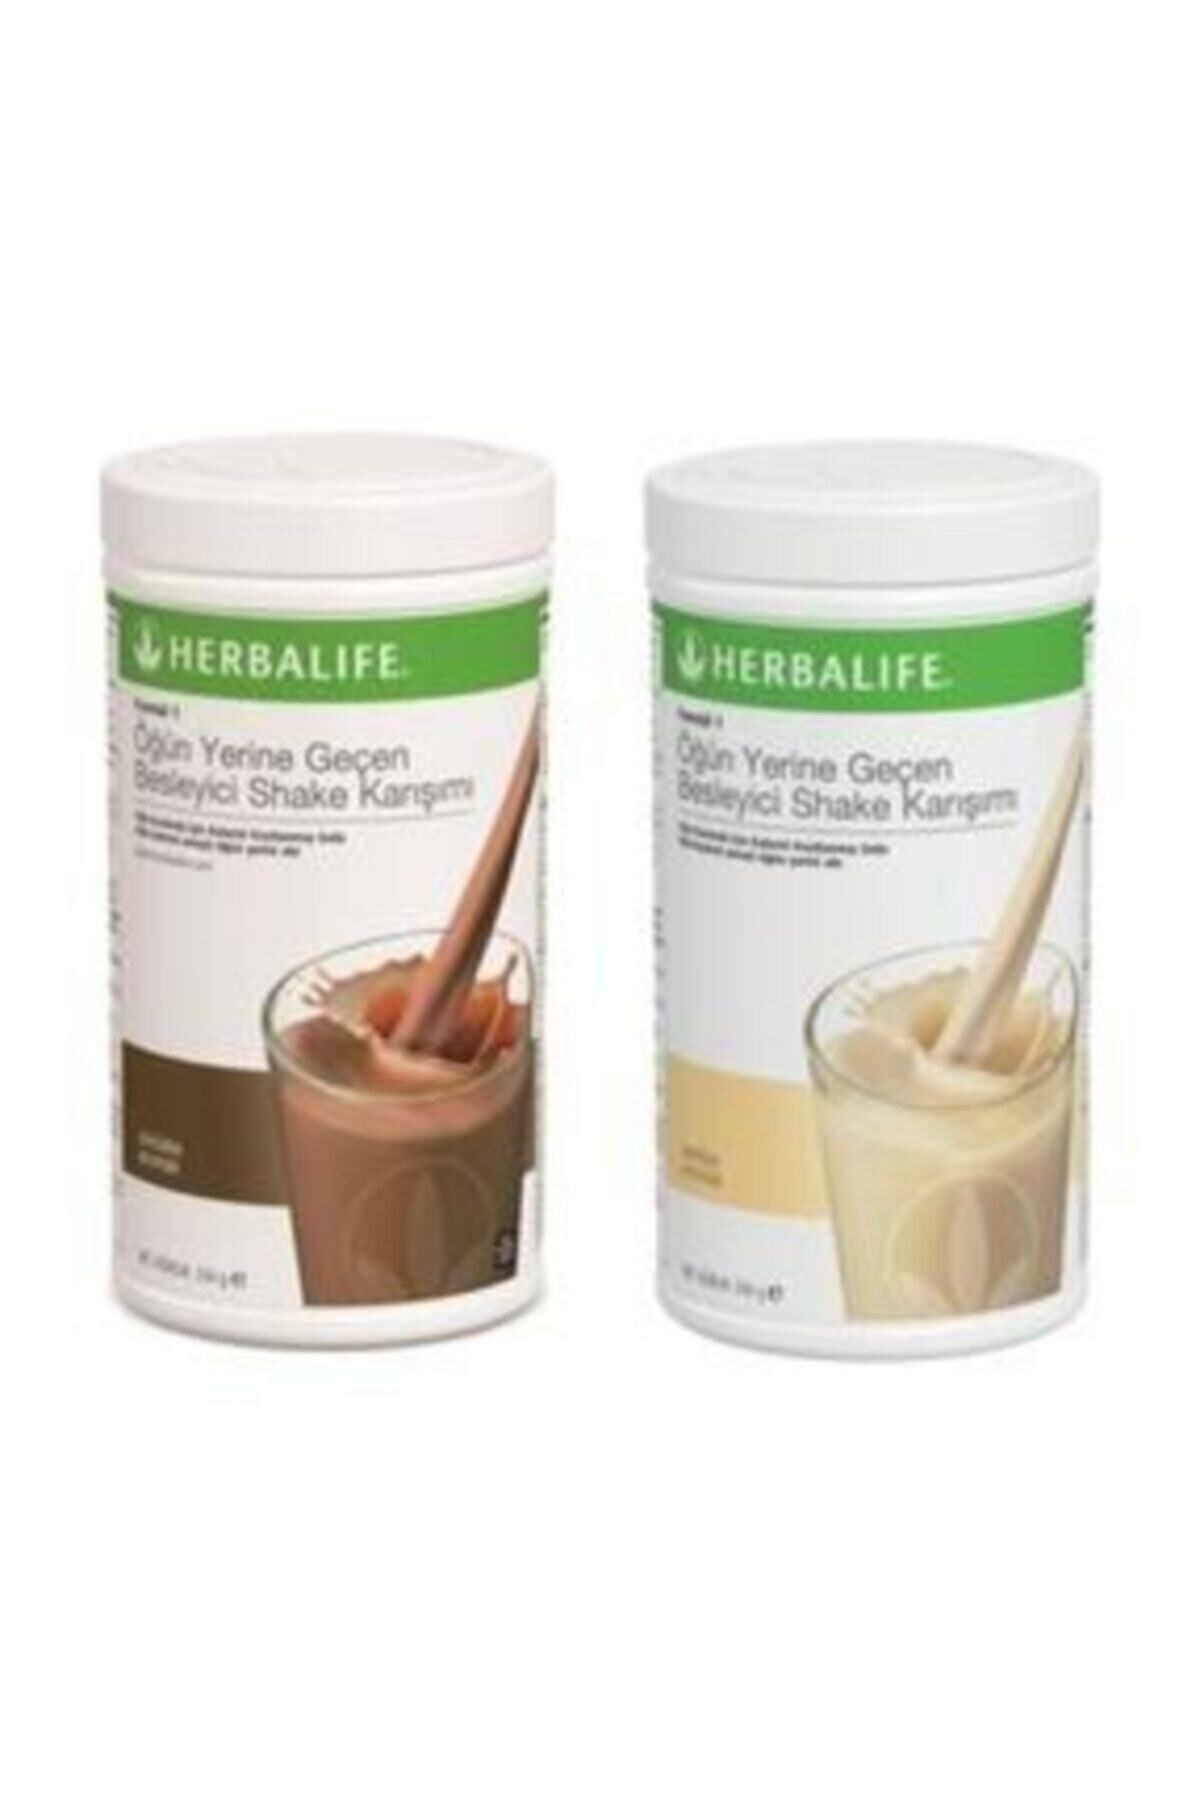 Herbalife Formül 1 Öğün Yerine Geçen Besleyici Shake Karışımı Çikolata &#43; Vanilya 550 gr